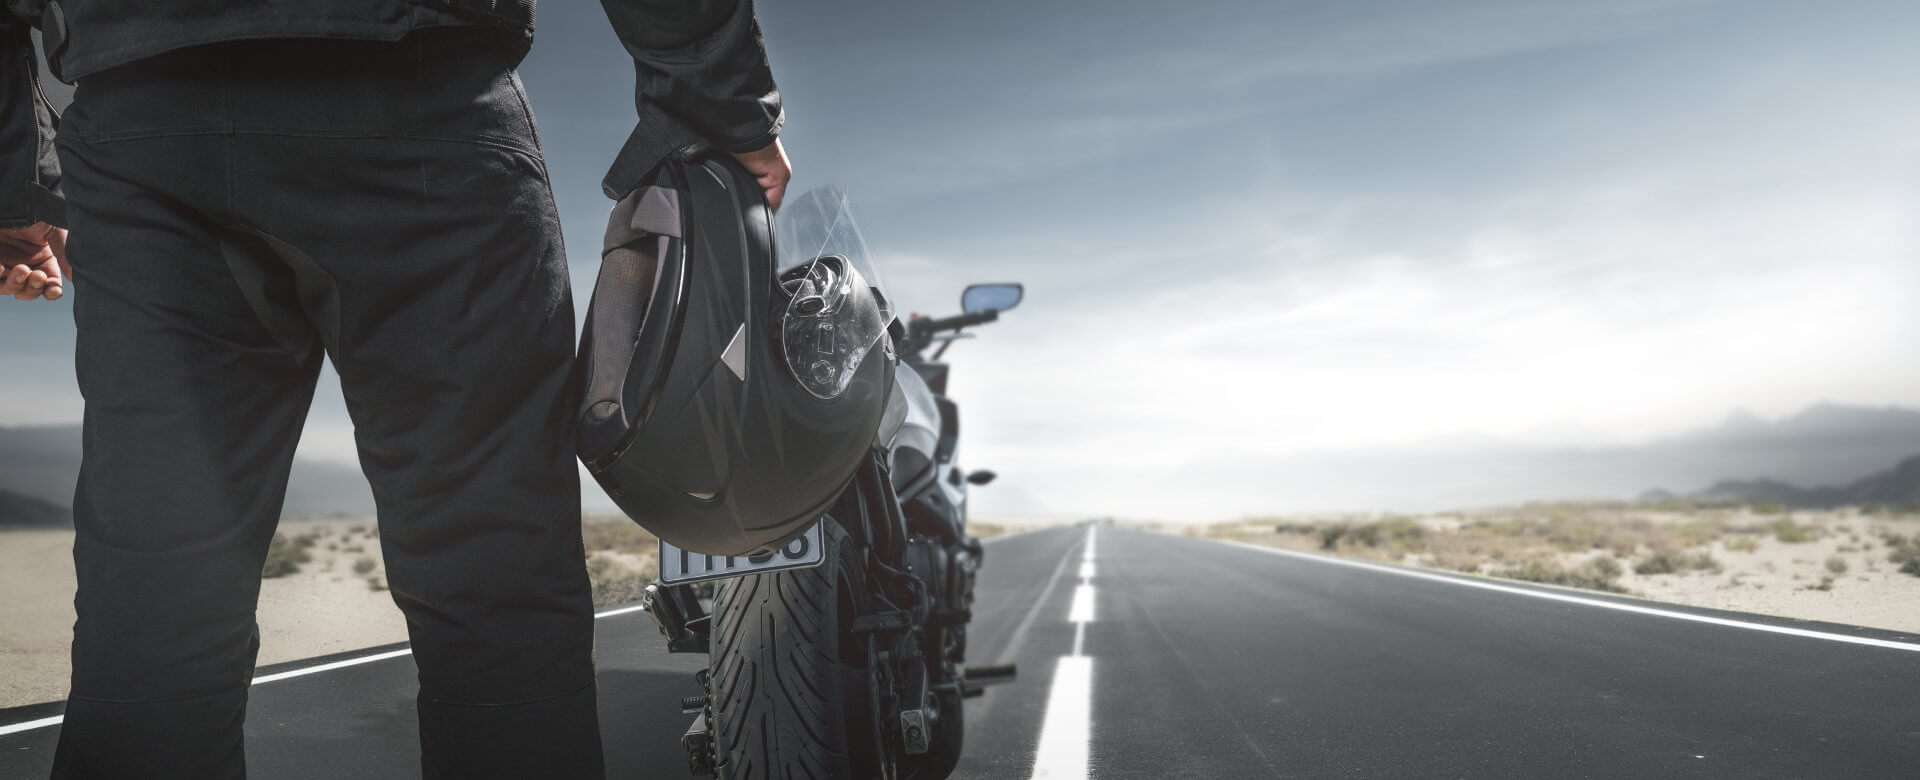 Ein Motorradfahrer hält seinen Helm in der Hand und steht mit seinem Motorrad auf einer Straße